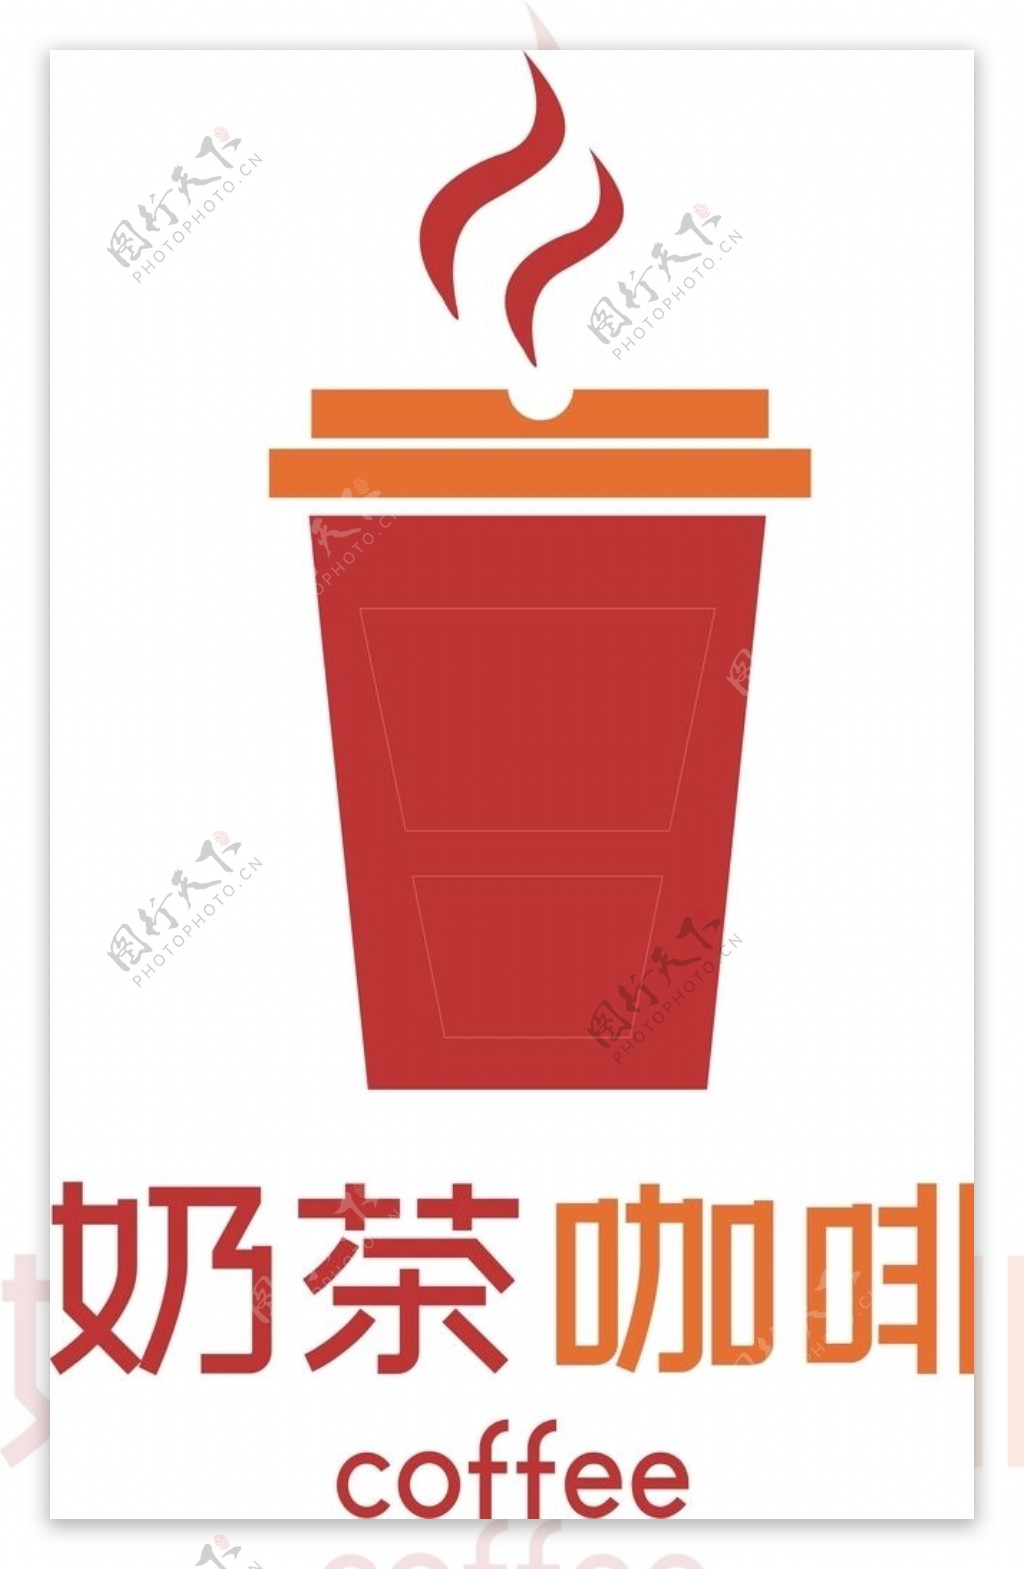 奶茶店logo